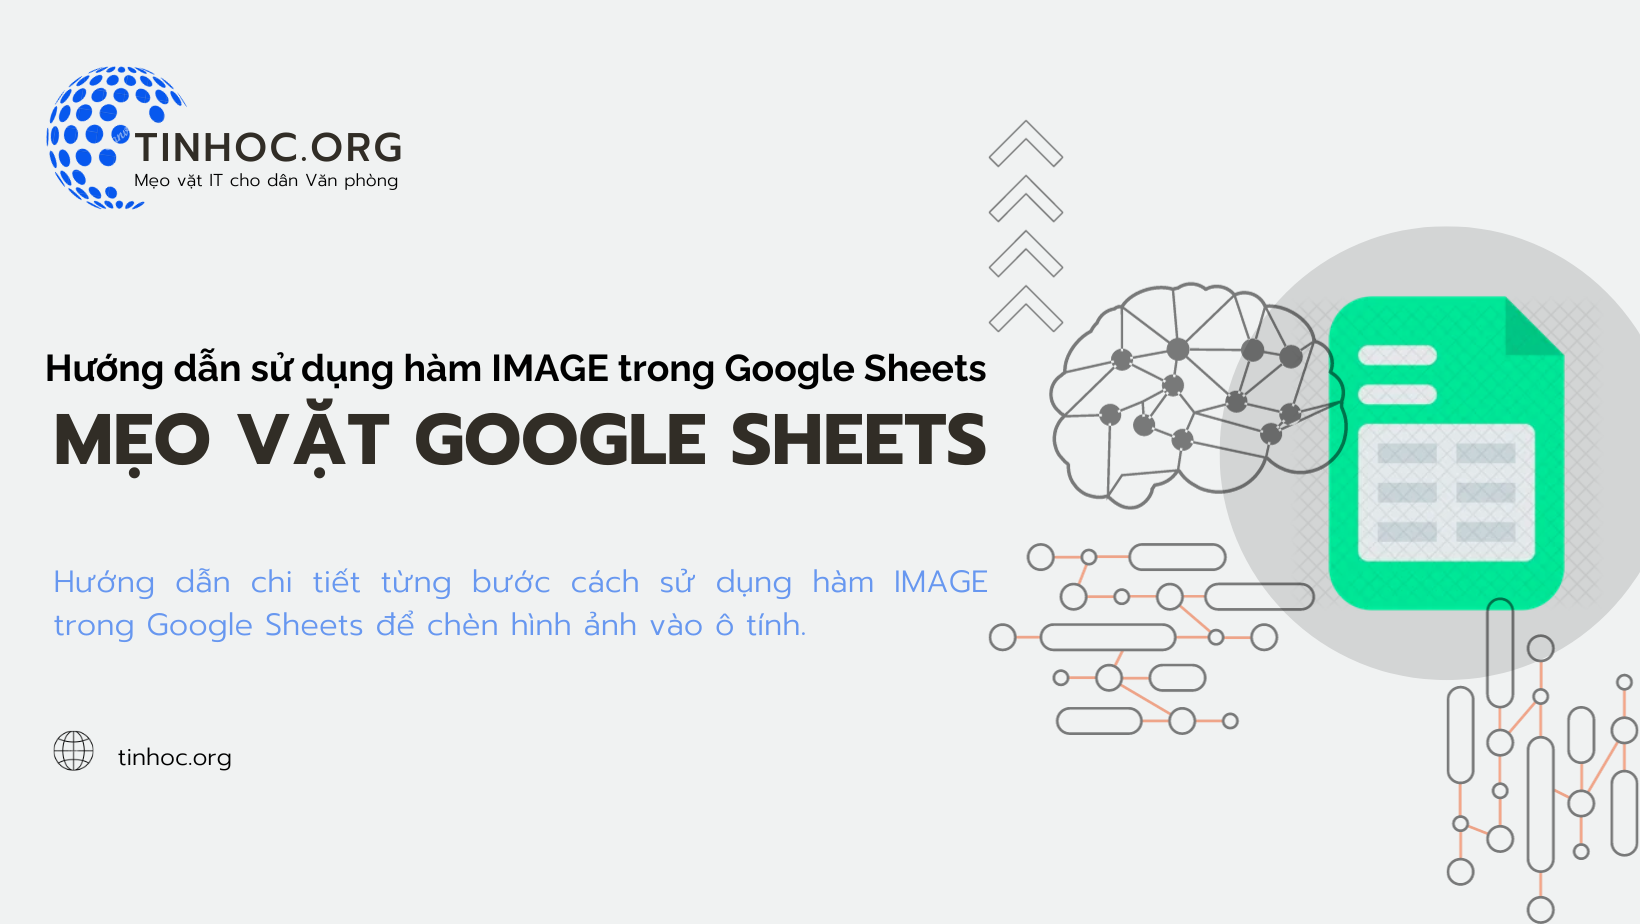 Hướng dẫn chi tiết từng bước cách sử dụng hàm IMAGE trong Google Sheets để chèn hình ảnh vào ô tính.